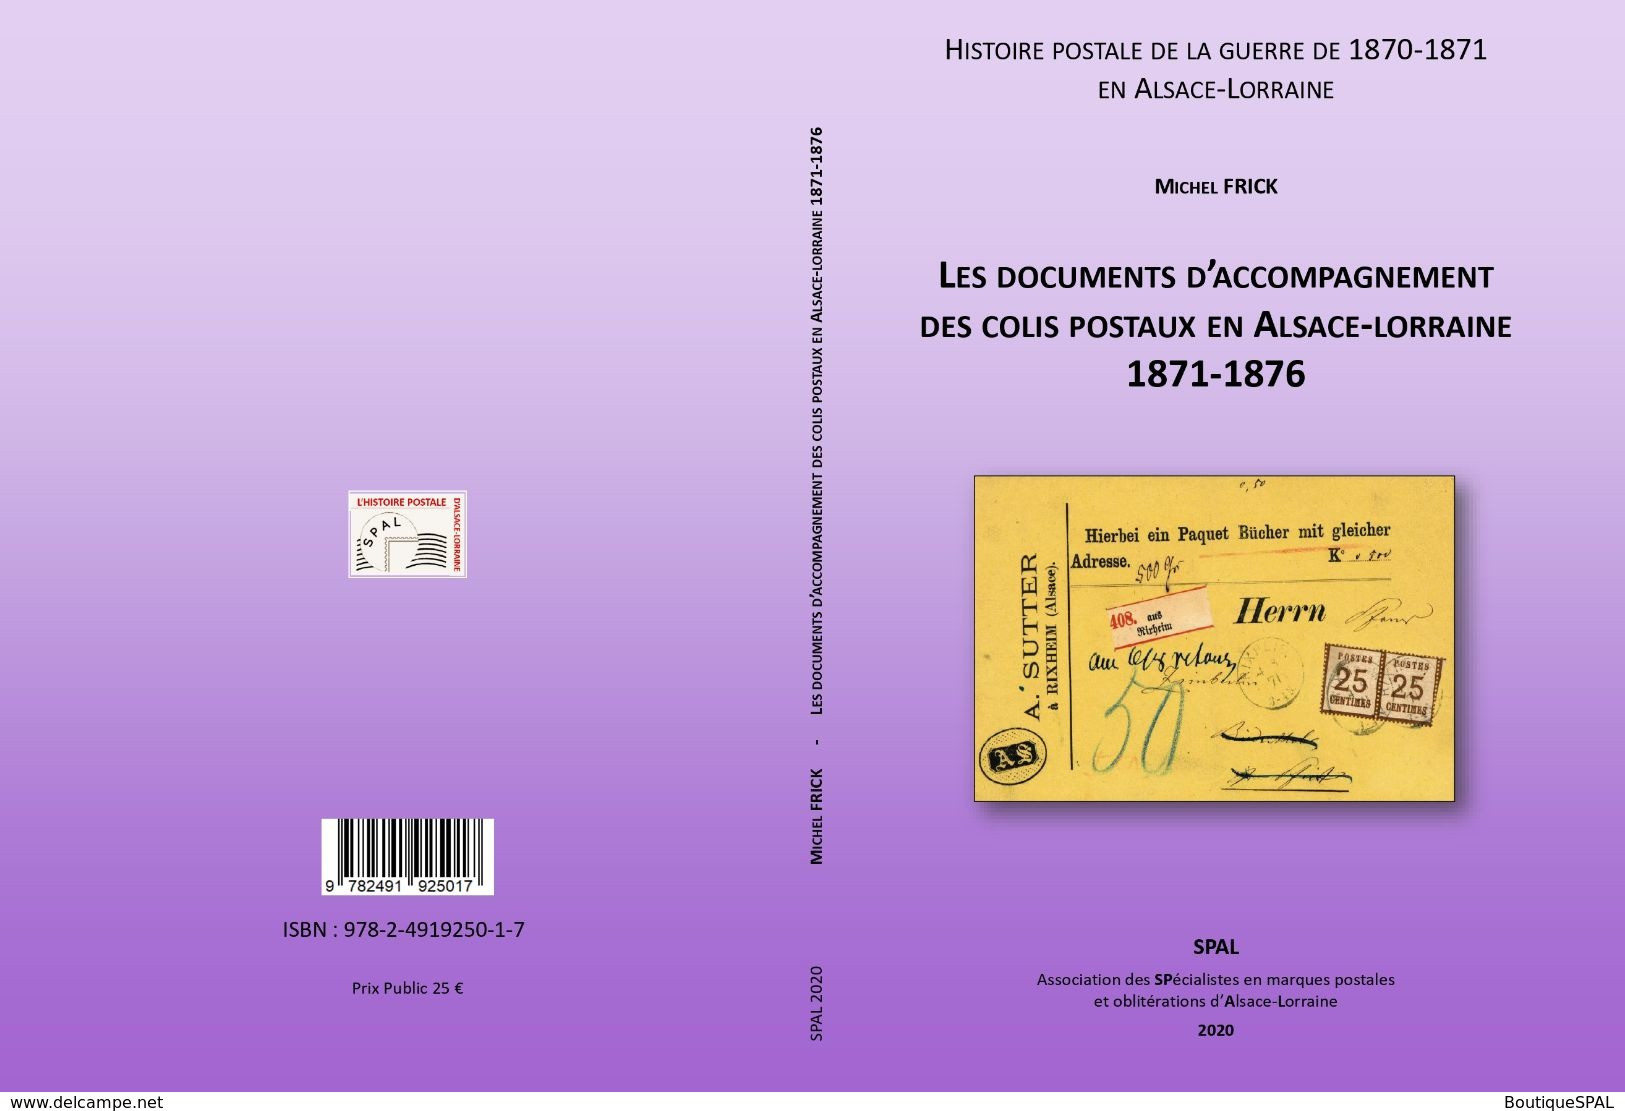 Les Documents D'accompagnement Des Colis Postaux D'Alsace-Lorraine 1871-1876 - Elsass Lothringen - SPAL 2020 - Correomilitar E Historia Postal